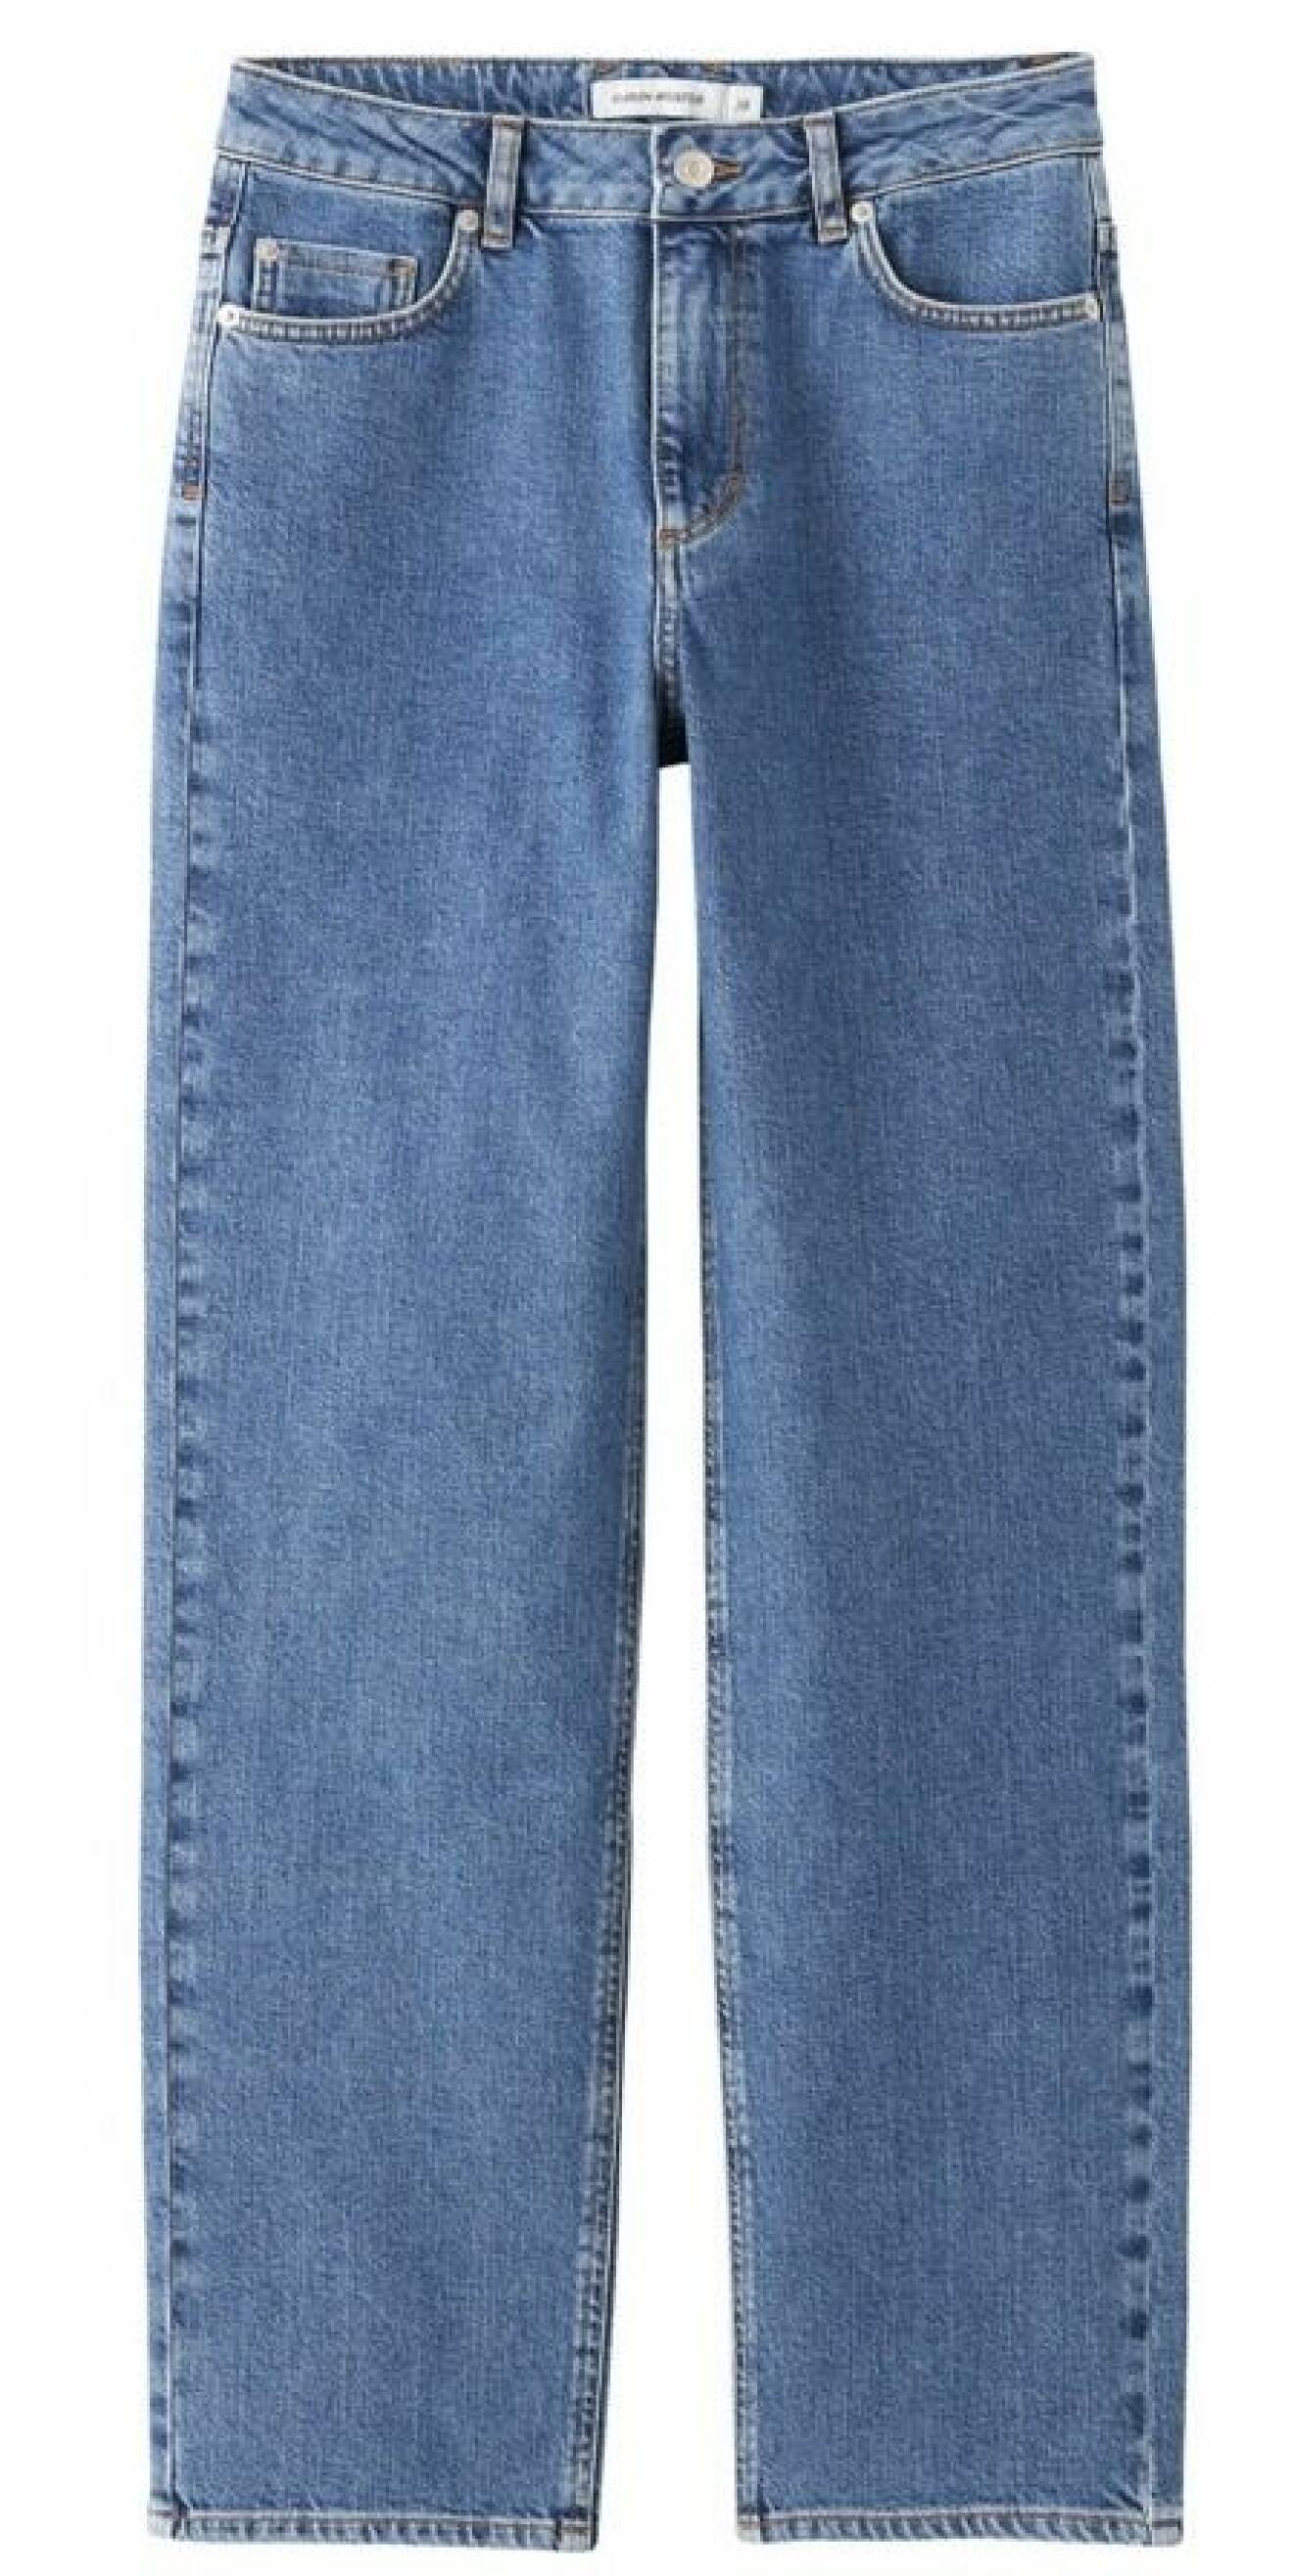 jeans i rak modell från carin wester.